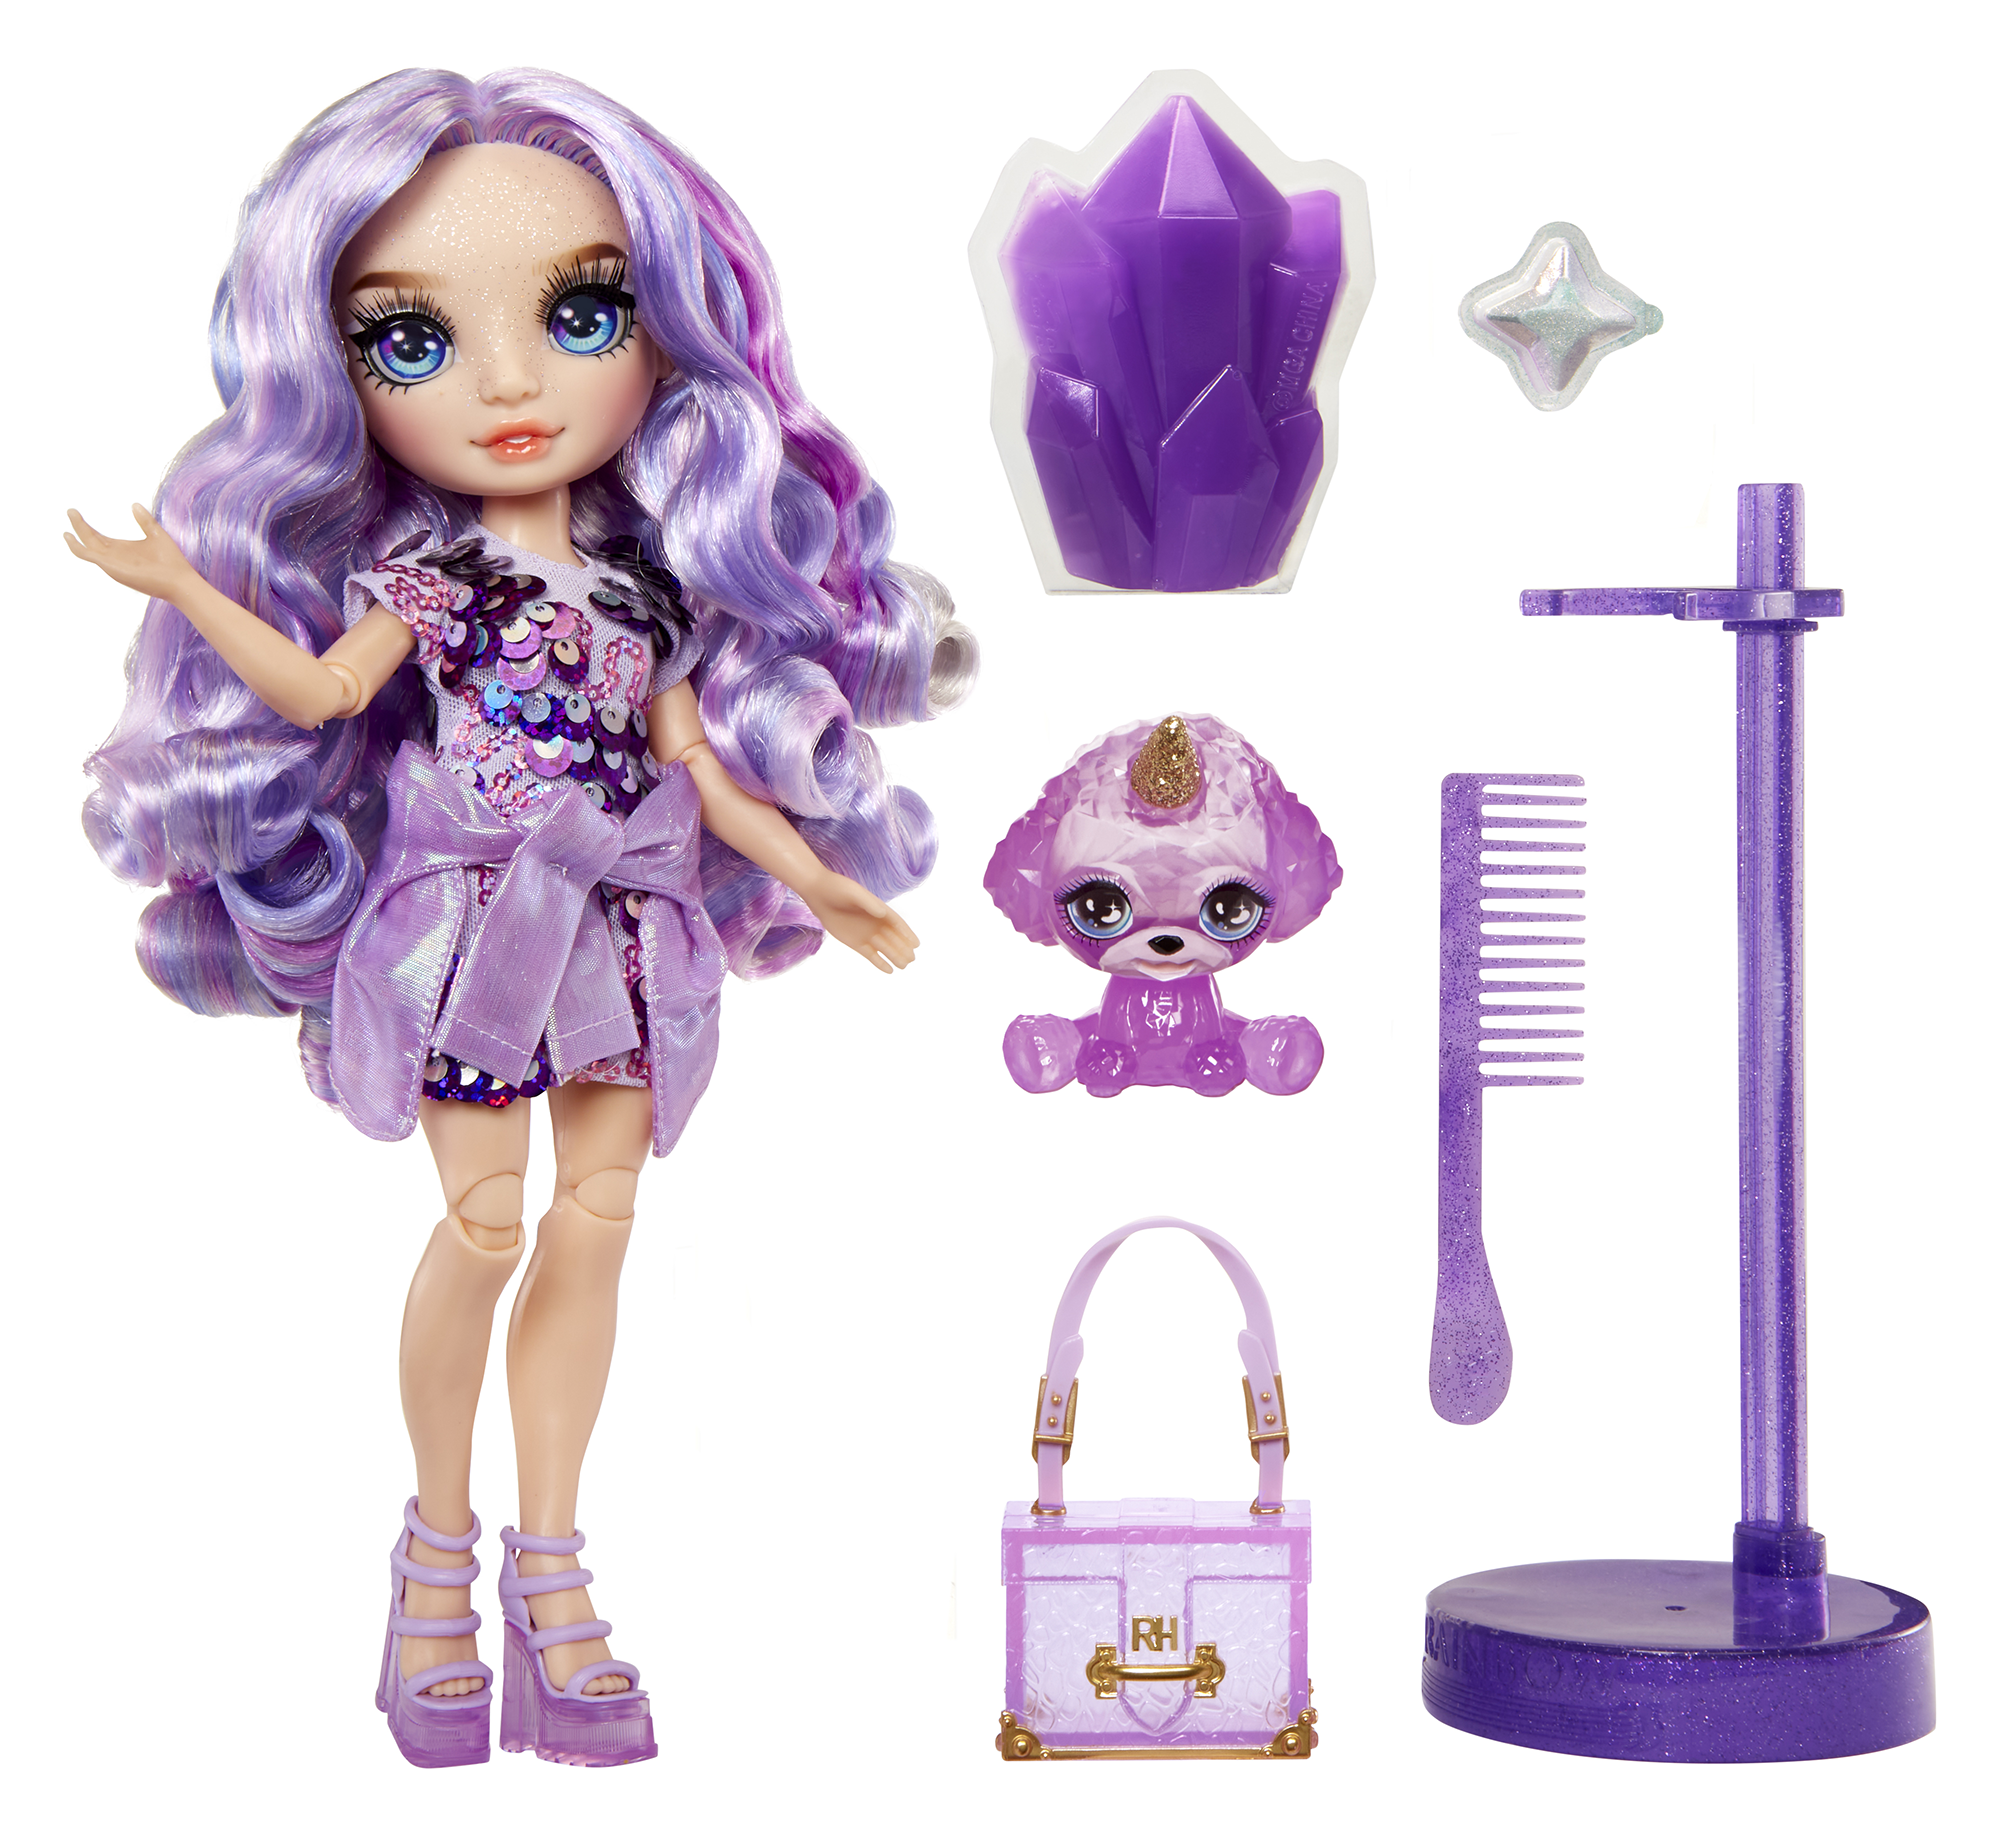 Rainbow high fashion doll con slime & cucciolo – violet (viola) - bambola scintillante da 28 cm con slime, animale magico e accessori alla moda - Rainbow High